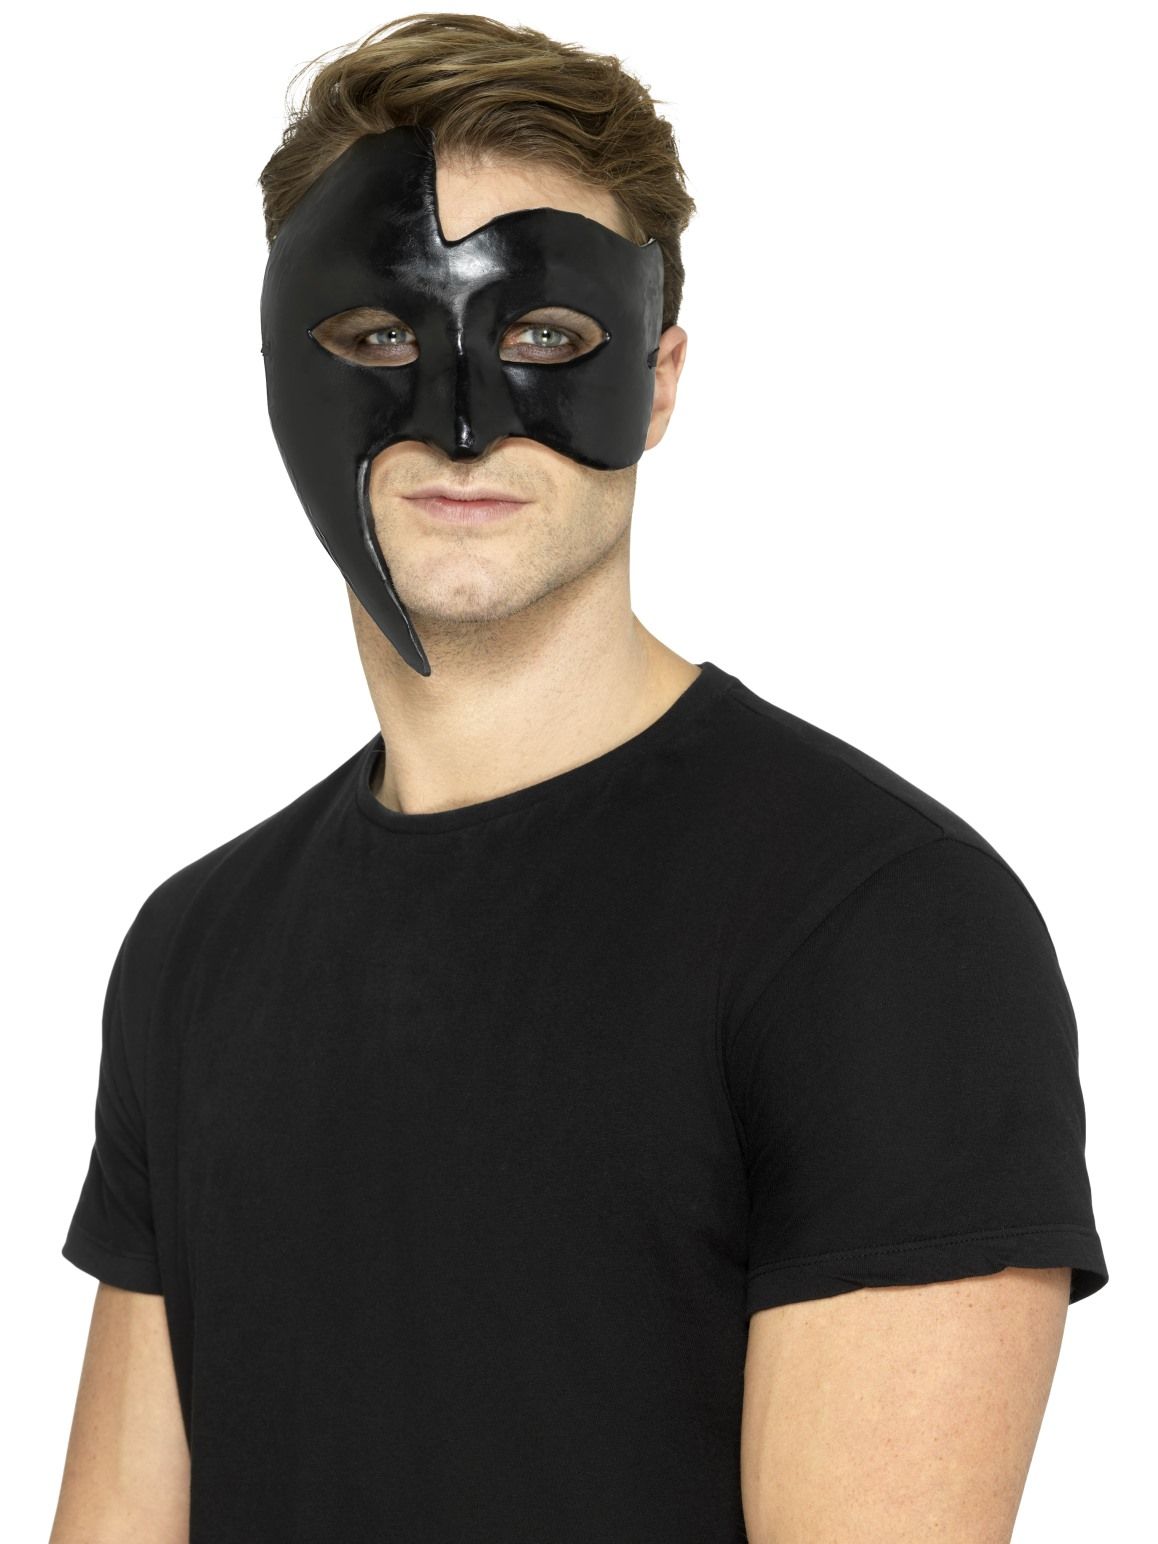 Покажи черные маски. Маска мужская. Мужчина в маске. Маска для лица мужская. Черная маска мужская.